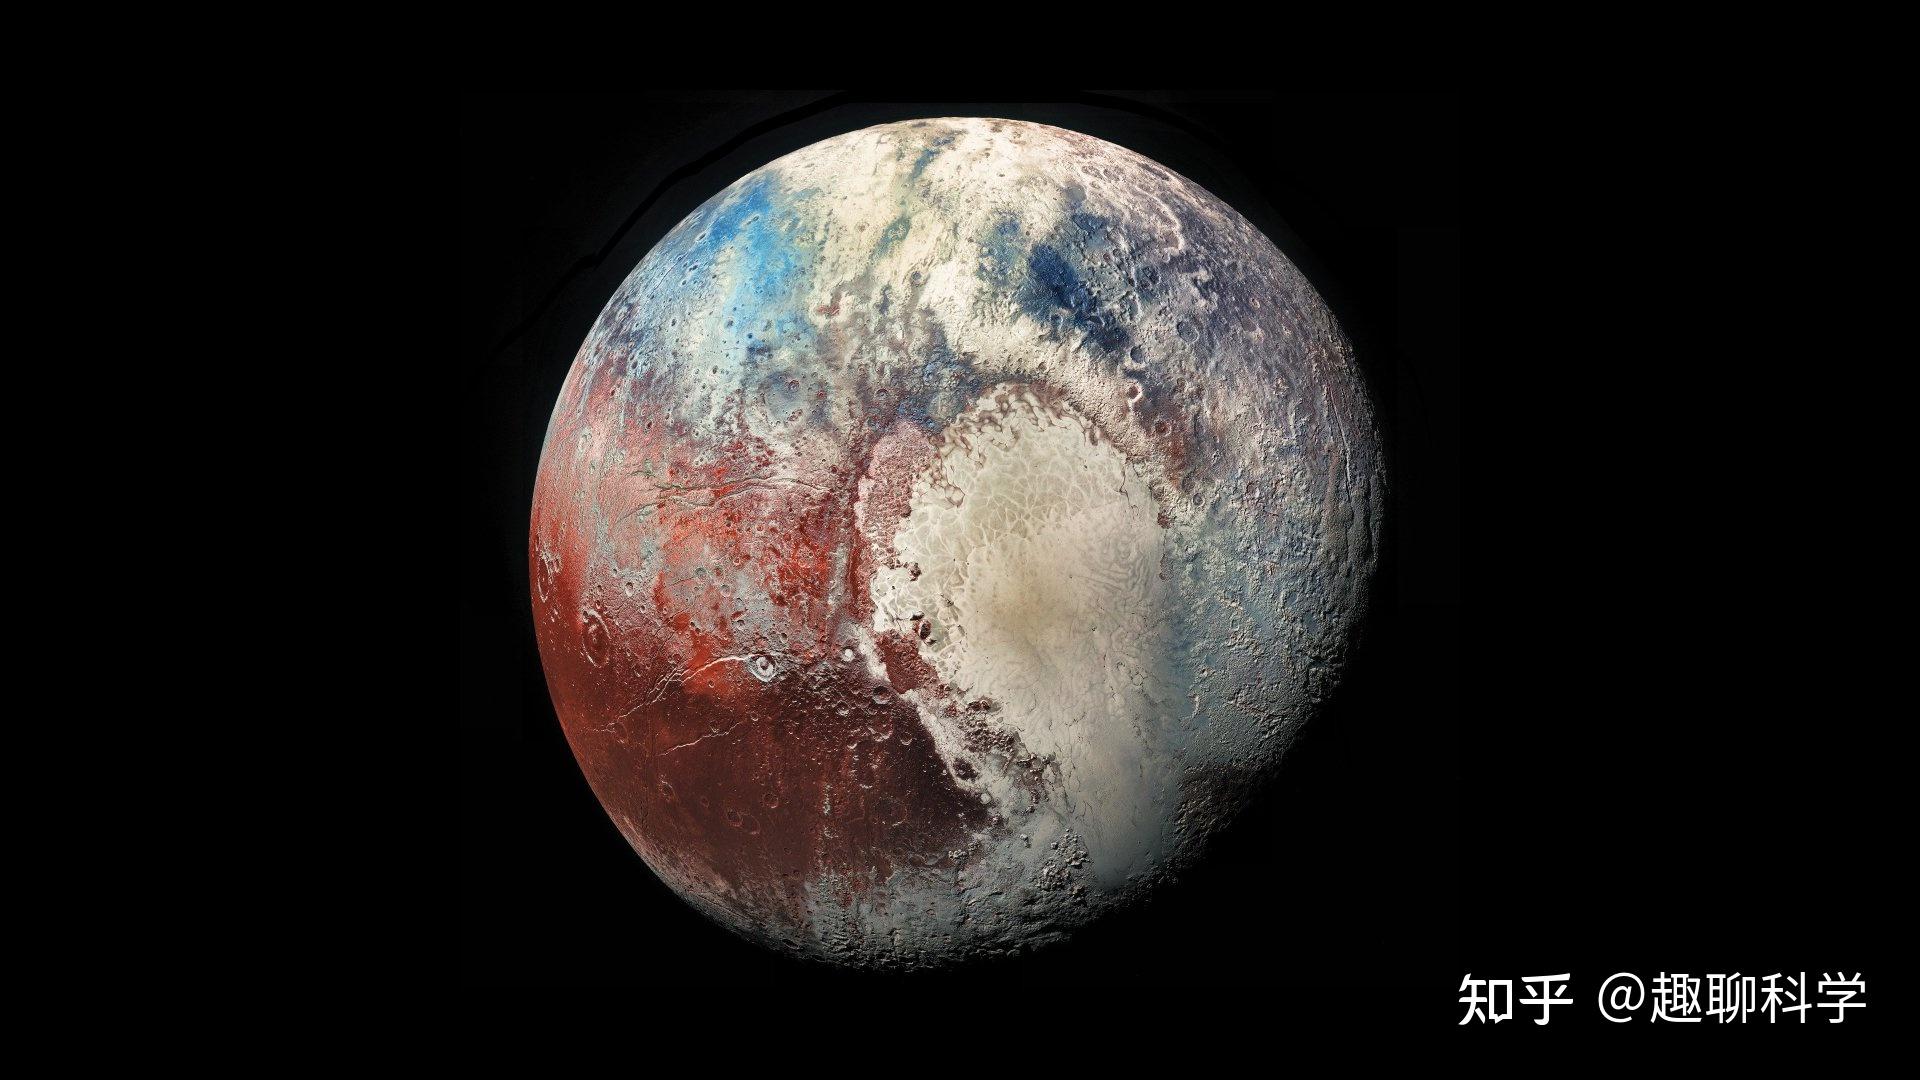 冥王星上看太阳,耀眼难掩凄凉,暗流涌动的冰川下,会有生命吗? 